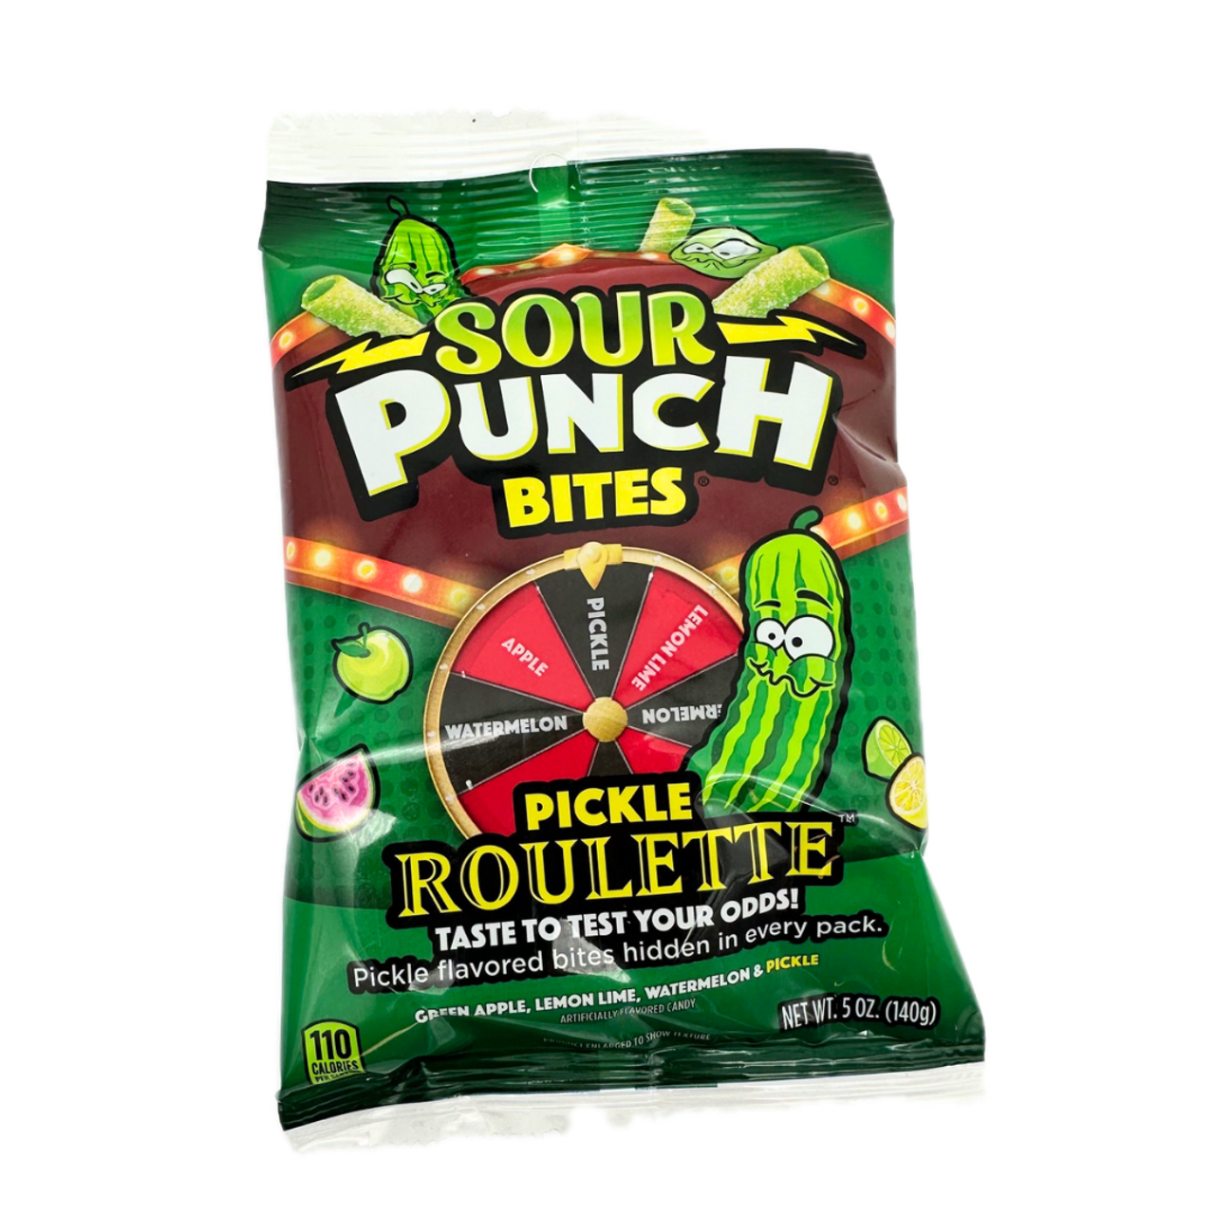 Sour Punch Bites Pickle Roulette Peg Bag 5oz - 12ct